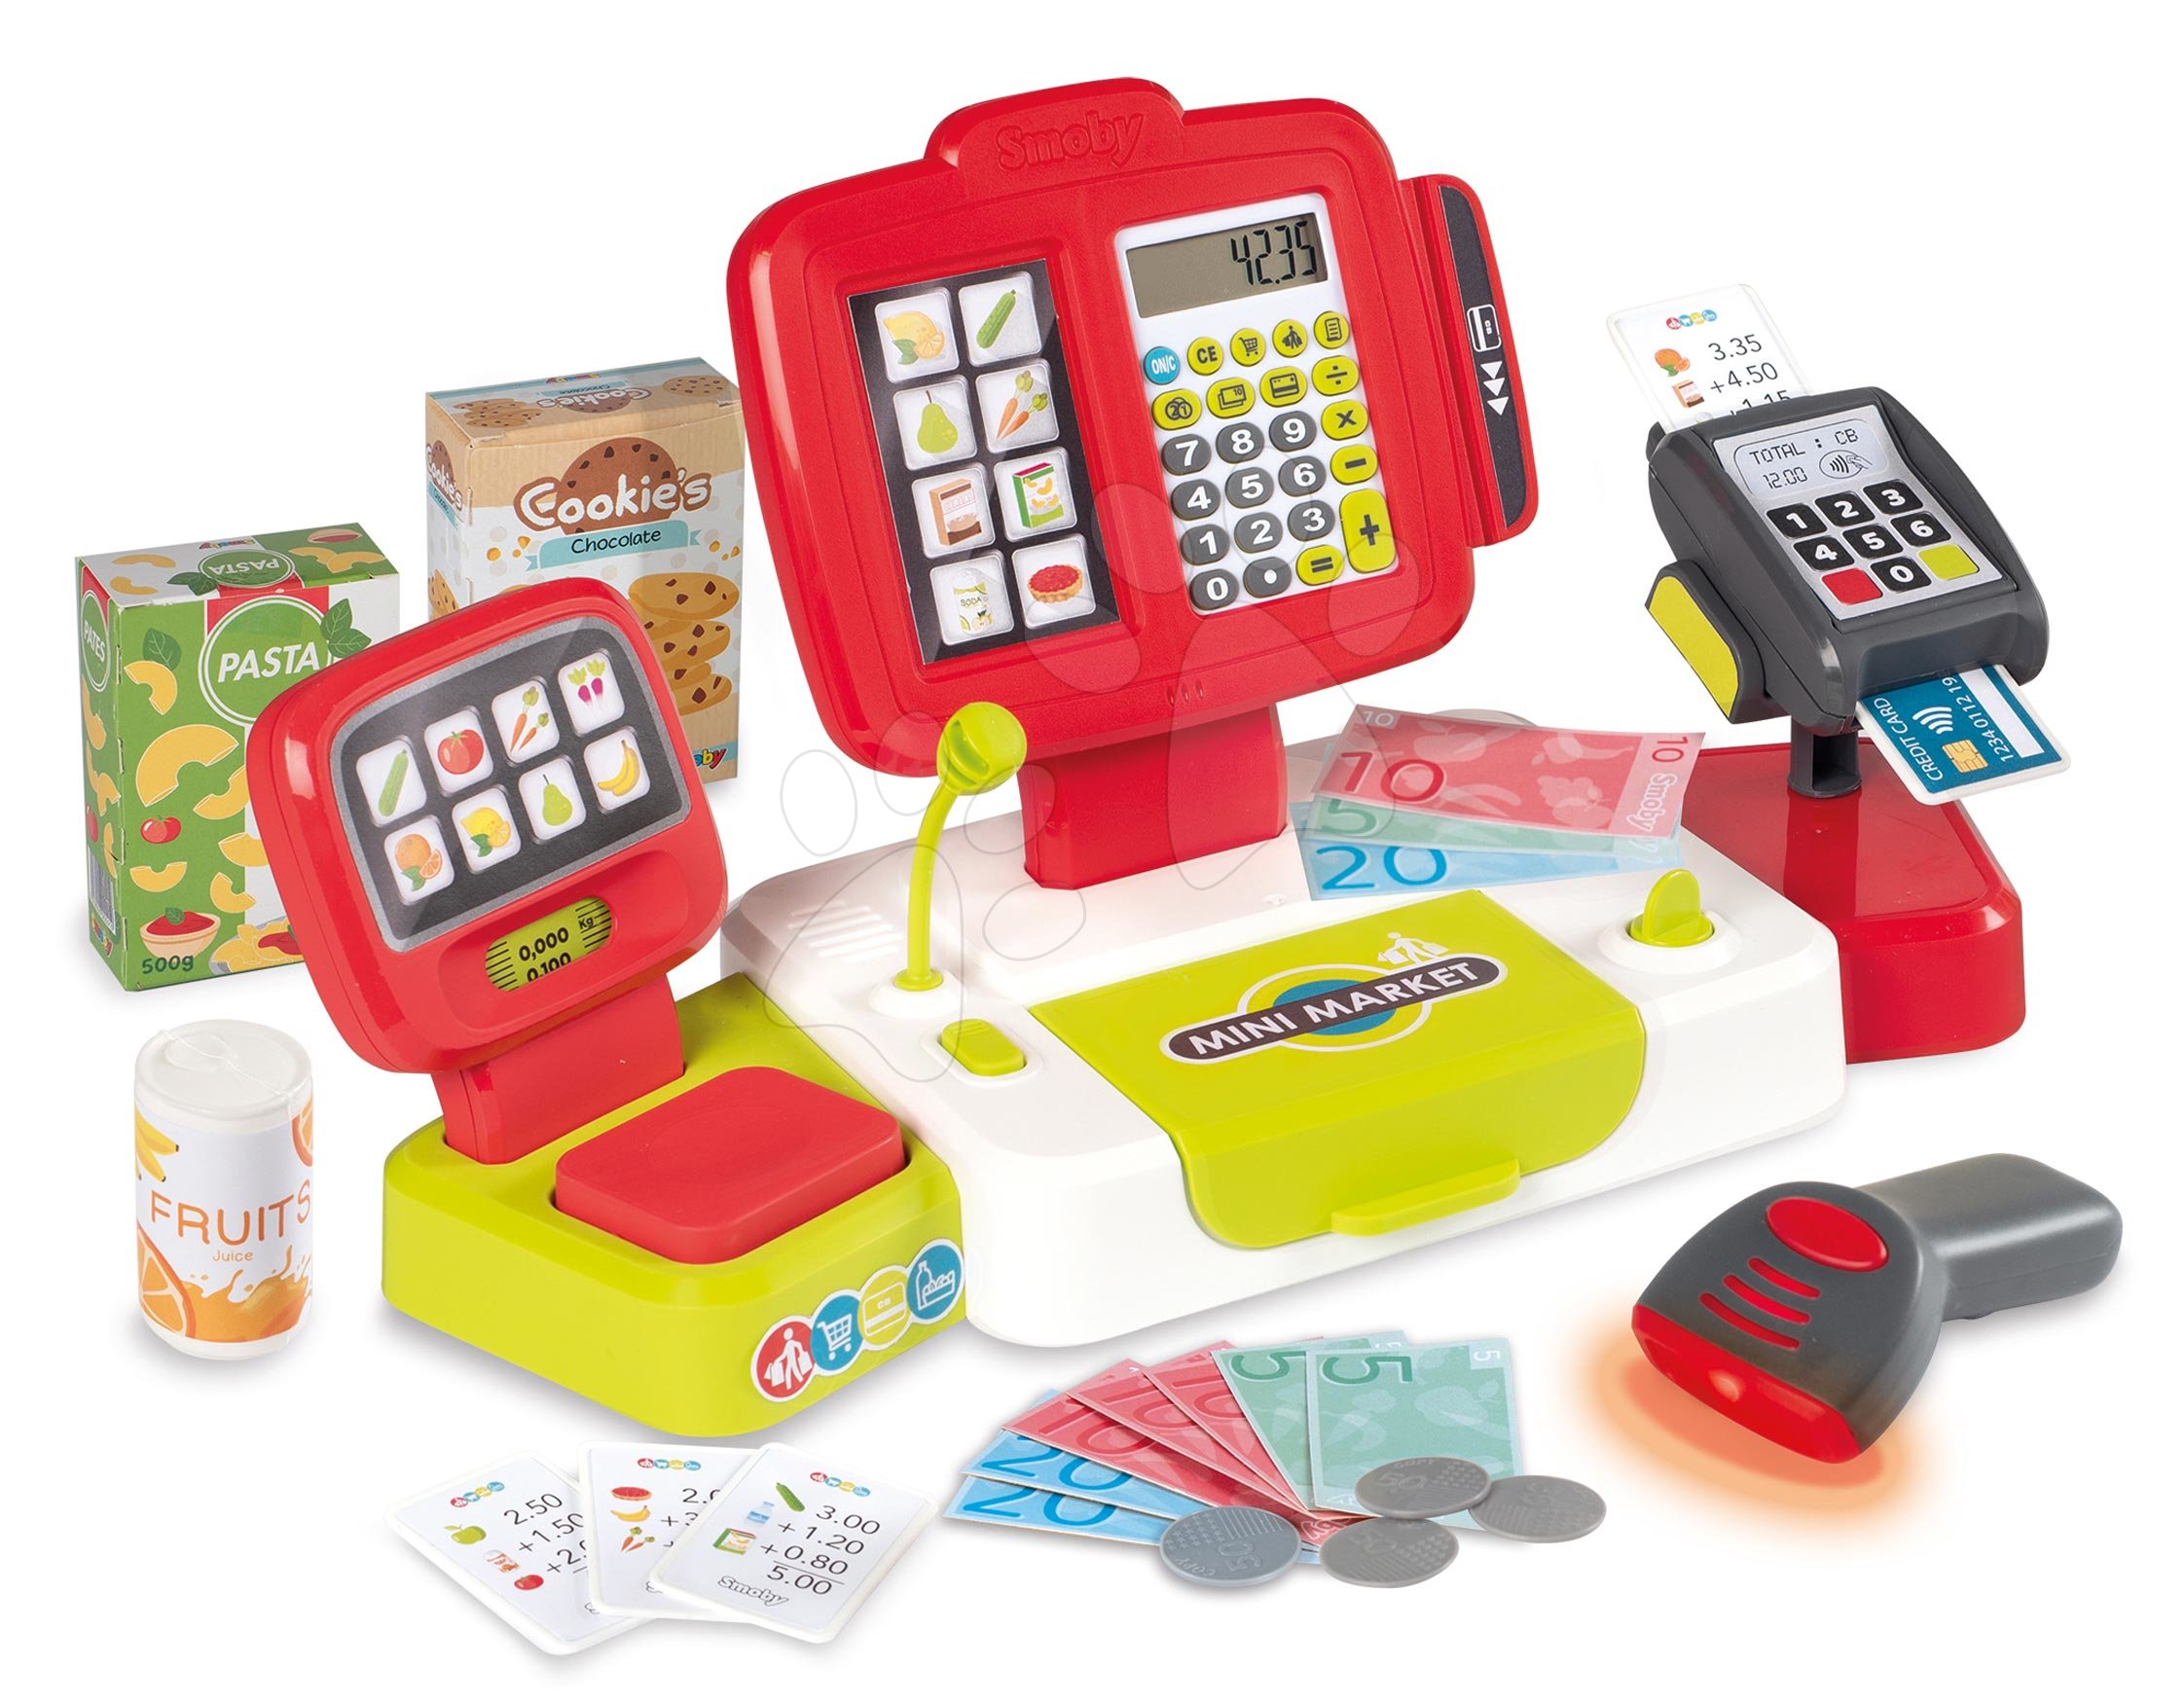 Obchody pro děti - Pokladna elektronická s kalkulačkou Large cash Register Smoby červená s váhou terminálem a čtečkou kódů s 30 doplňky